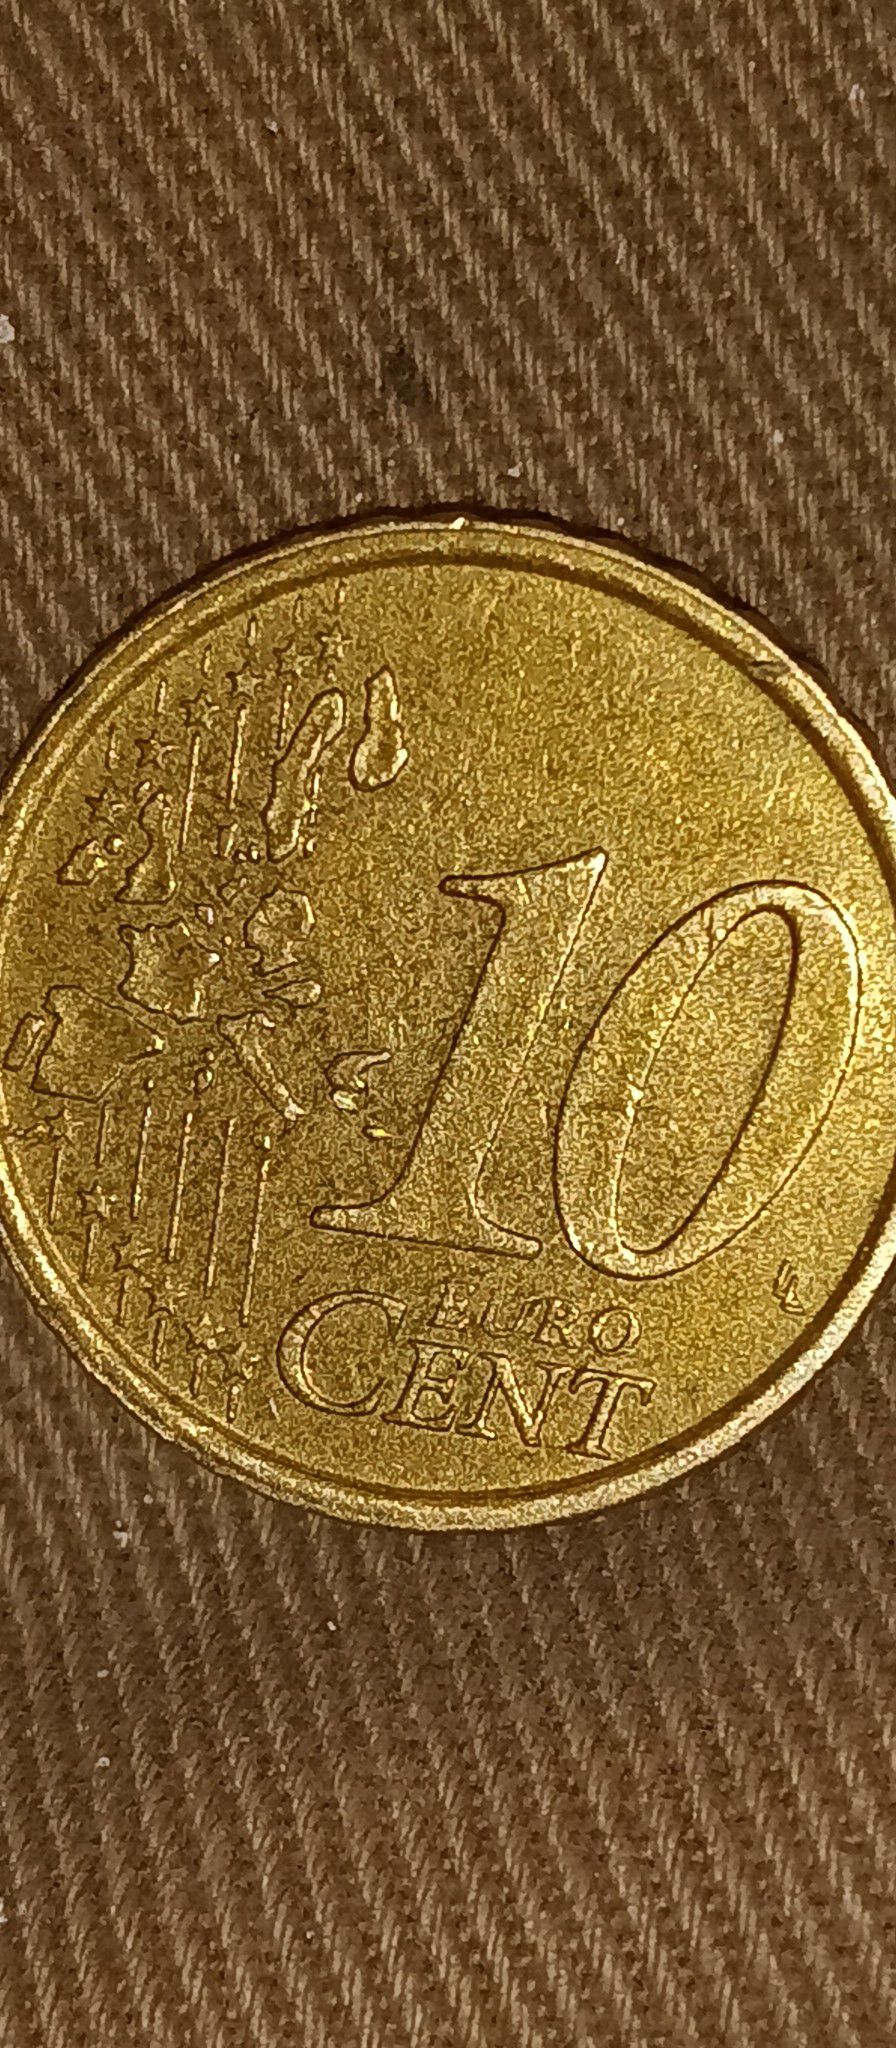 2002R Italy 10 Euro Cent Coin Grade XF (Circulated)